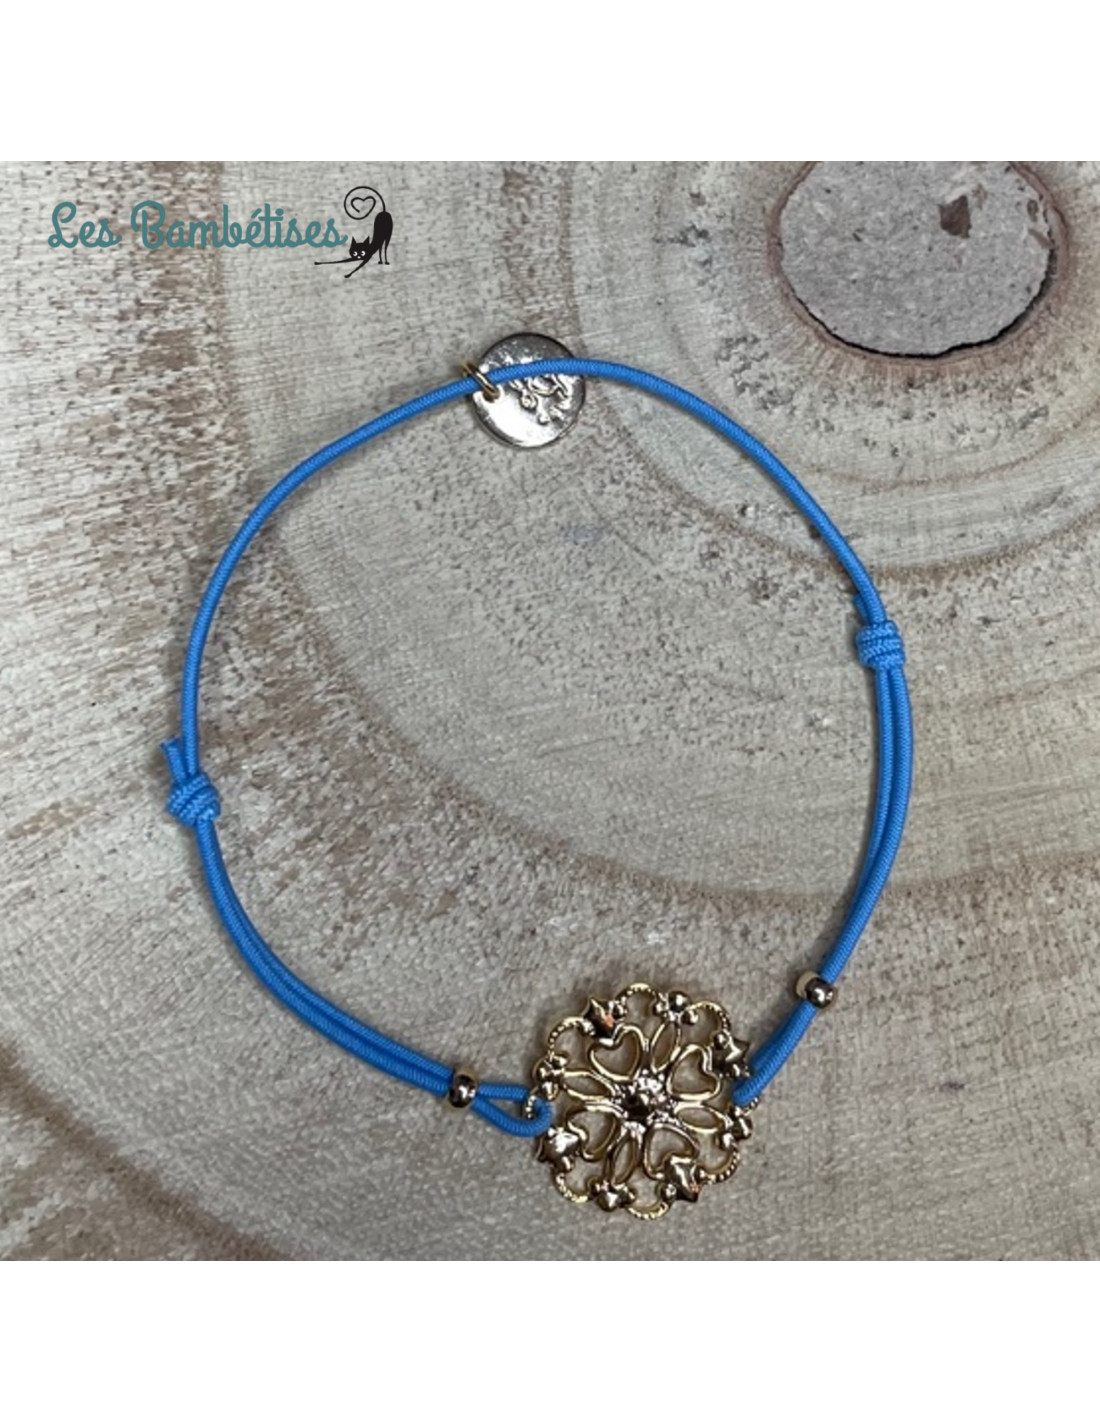 Bracelet Élastique Bleu Rosace Or - Les Bambetises